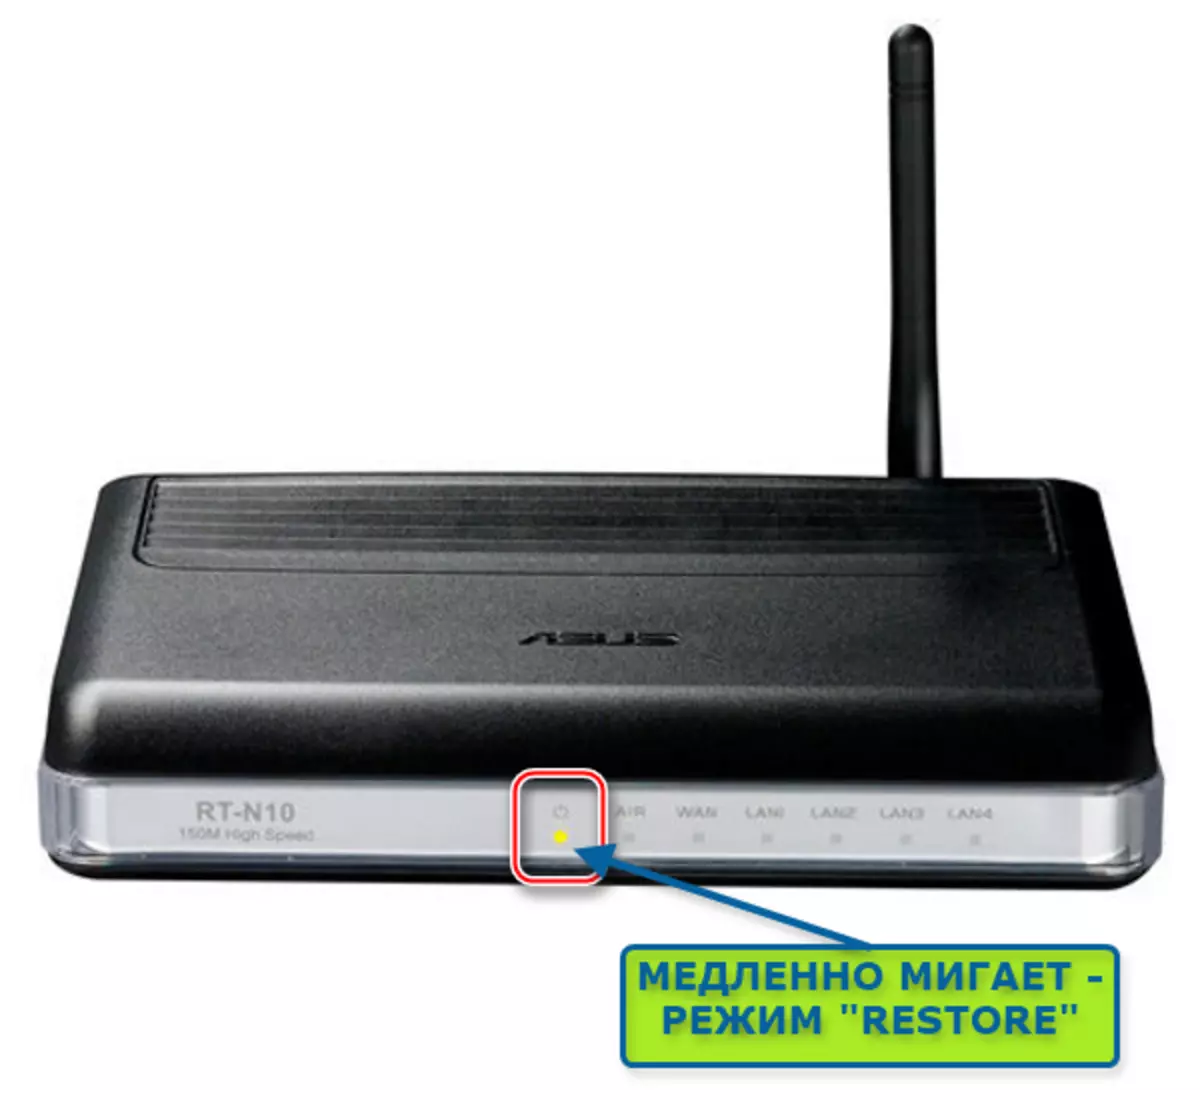 Asus RT-N10 router dina modeu pamulihan - Indikator Gancang